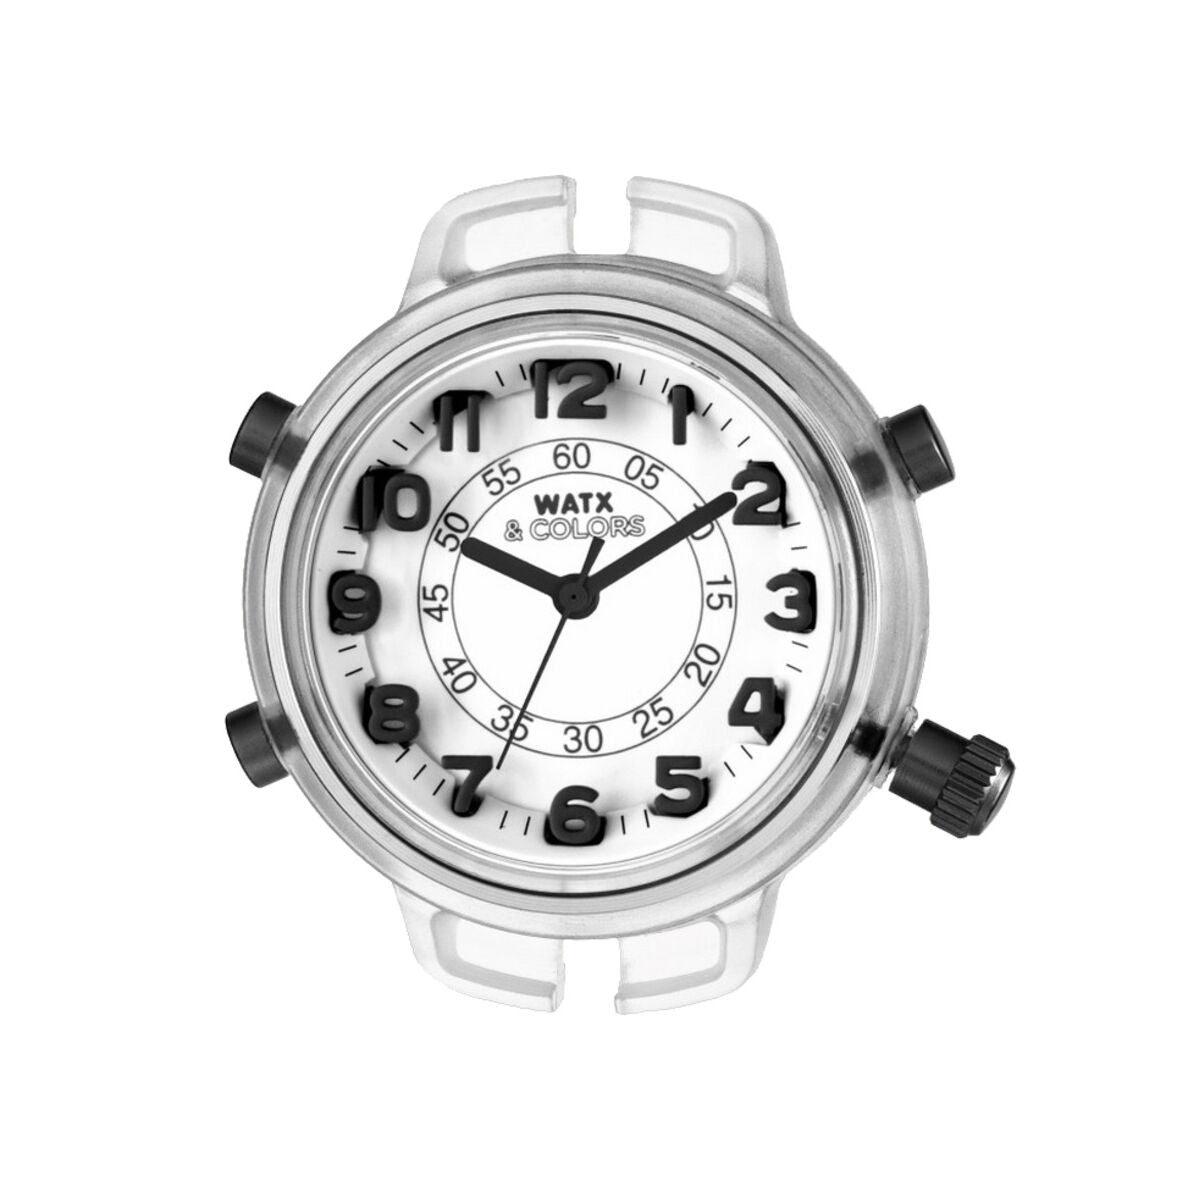 Horloge Dames Watx & Colors RWA1550 (Ø 38 mm)